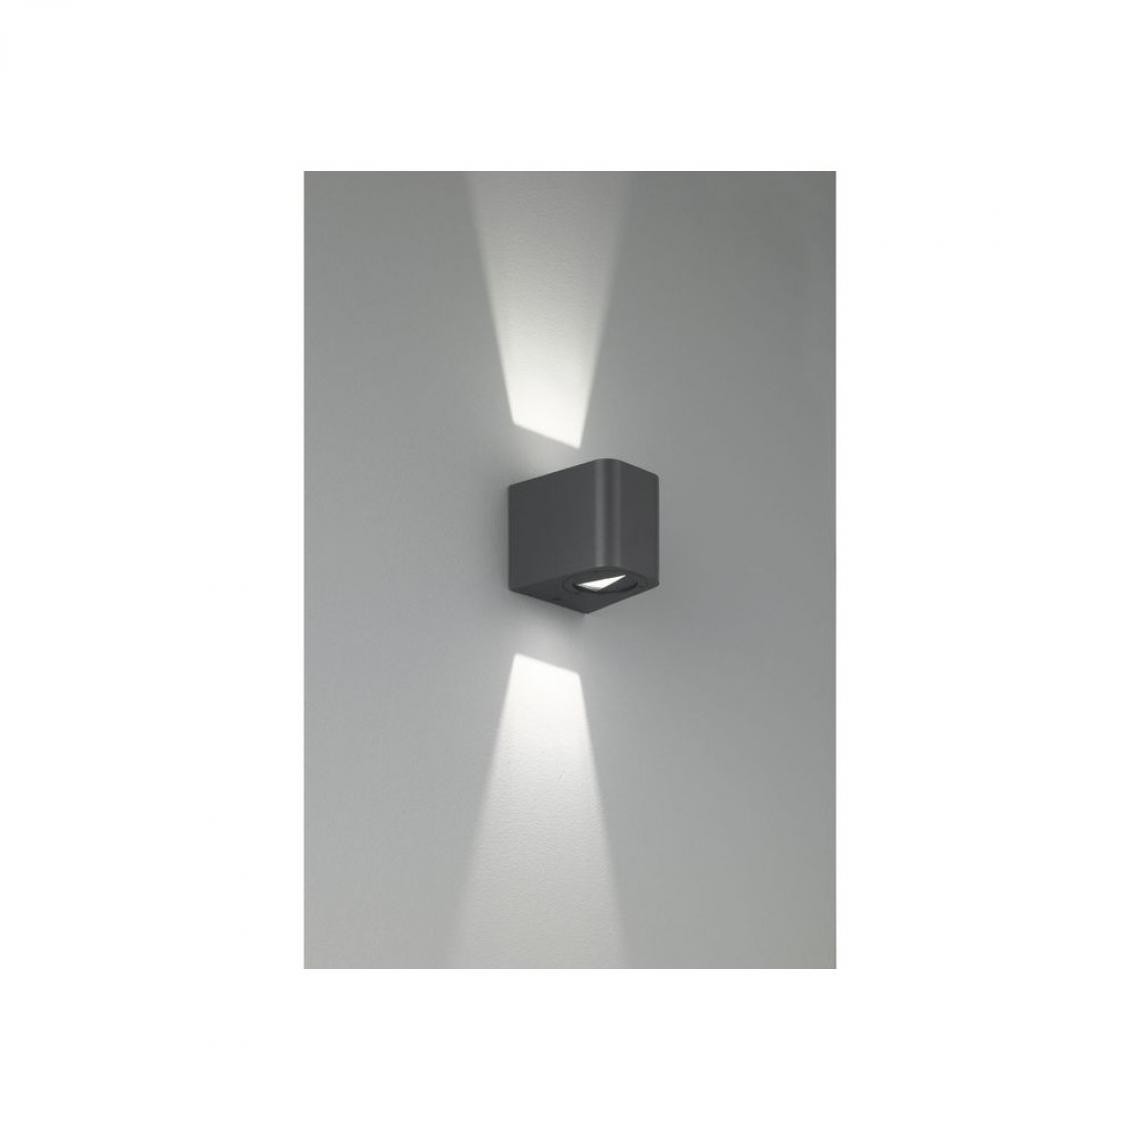 REALITY - Applique Bogota Anthracite 2x3W SMD LED - Applique, hublot